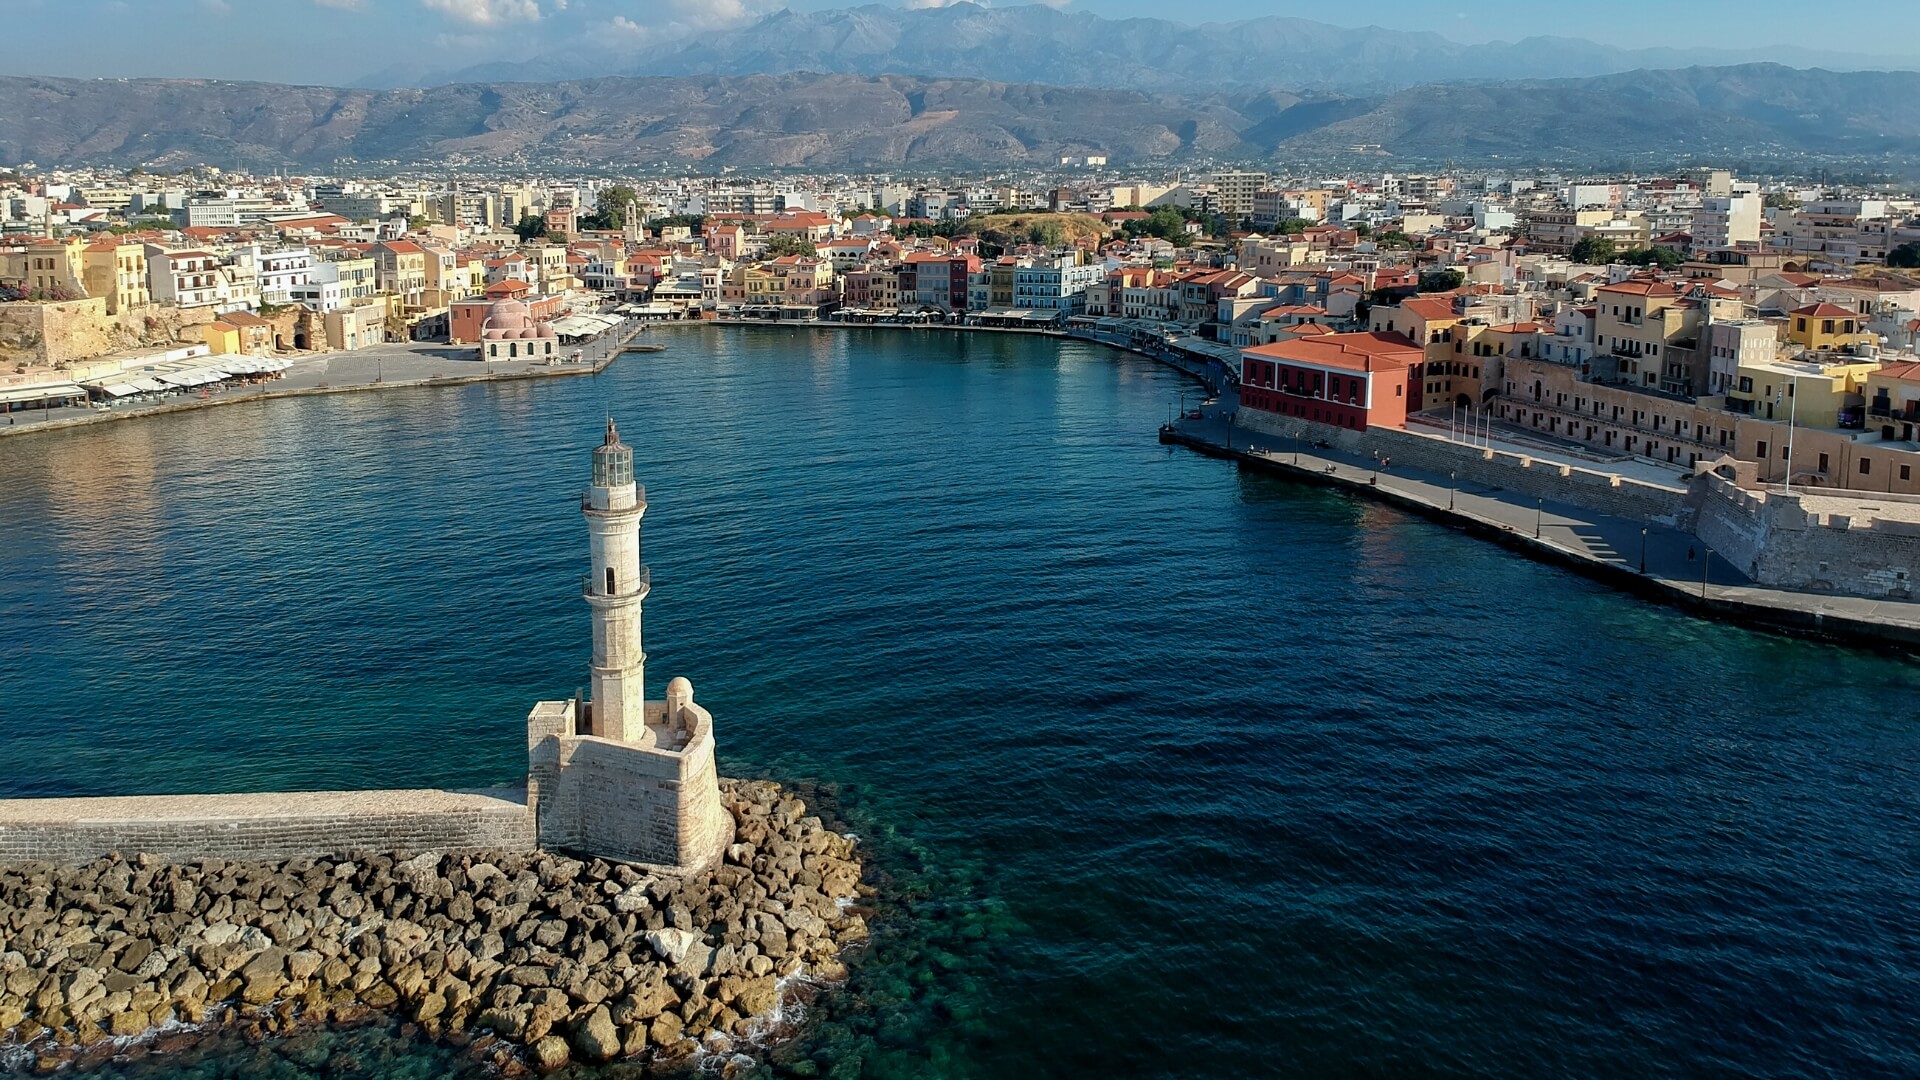 Chania harbor in Crete